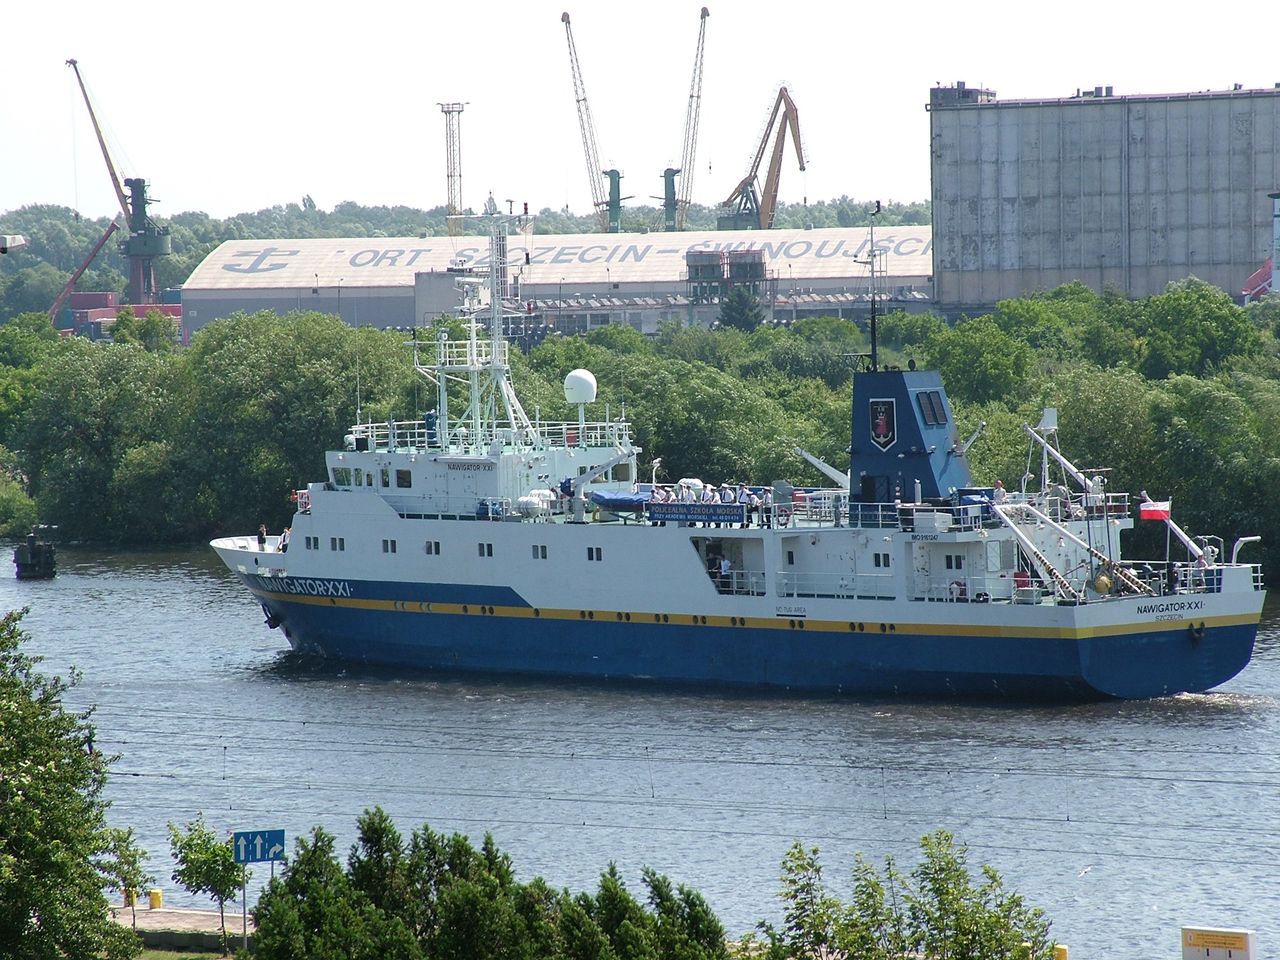 Statek Nawigator XXI Akademii Morskiej w Szczecinie (źródło: Wikipedia)